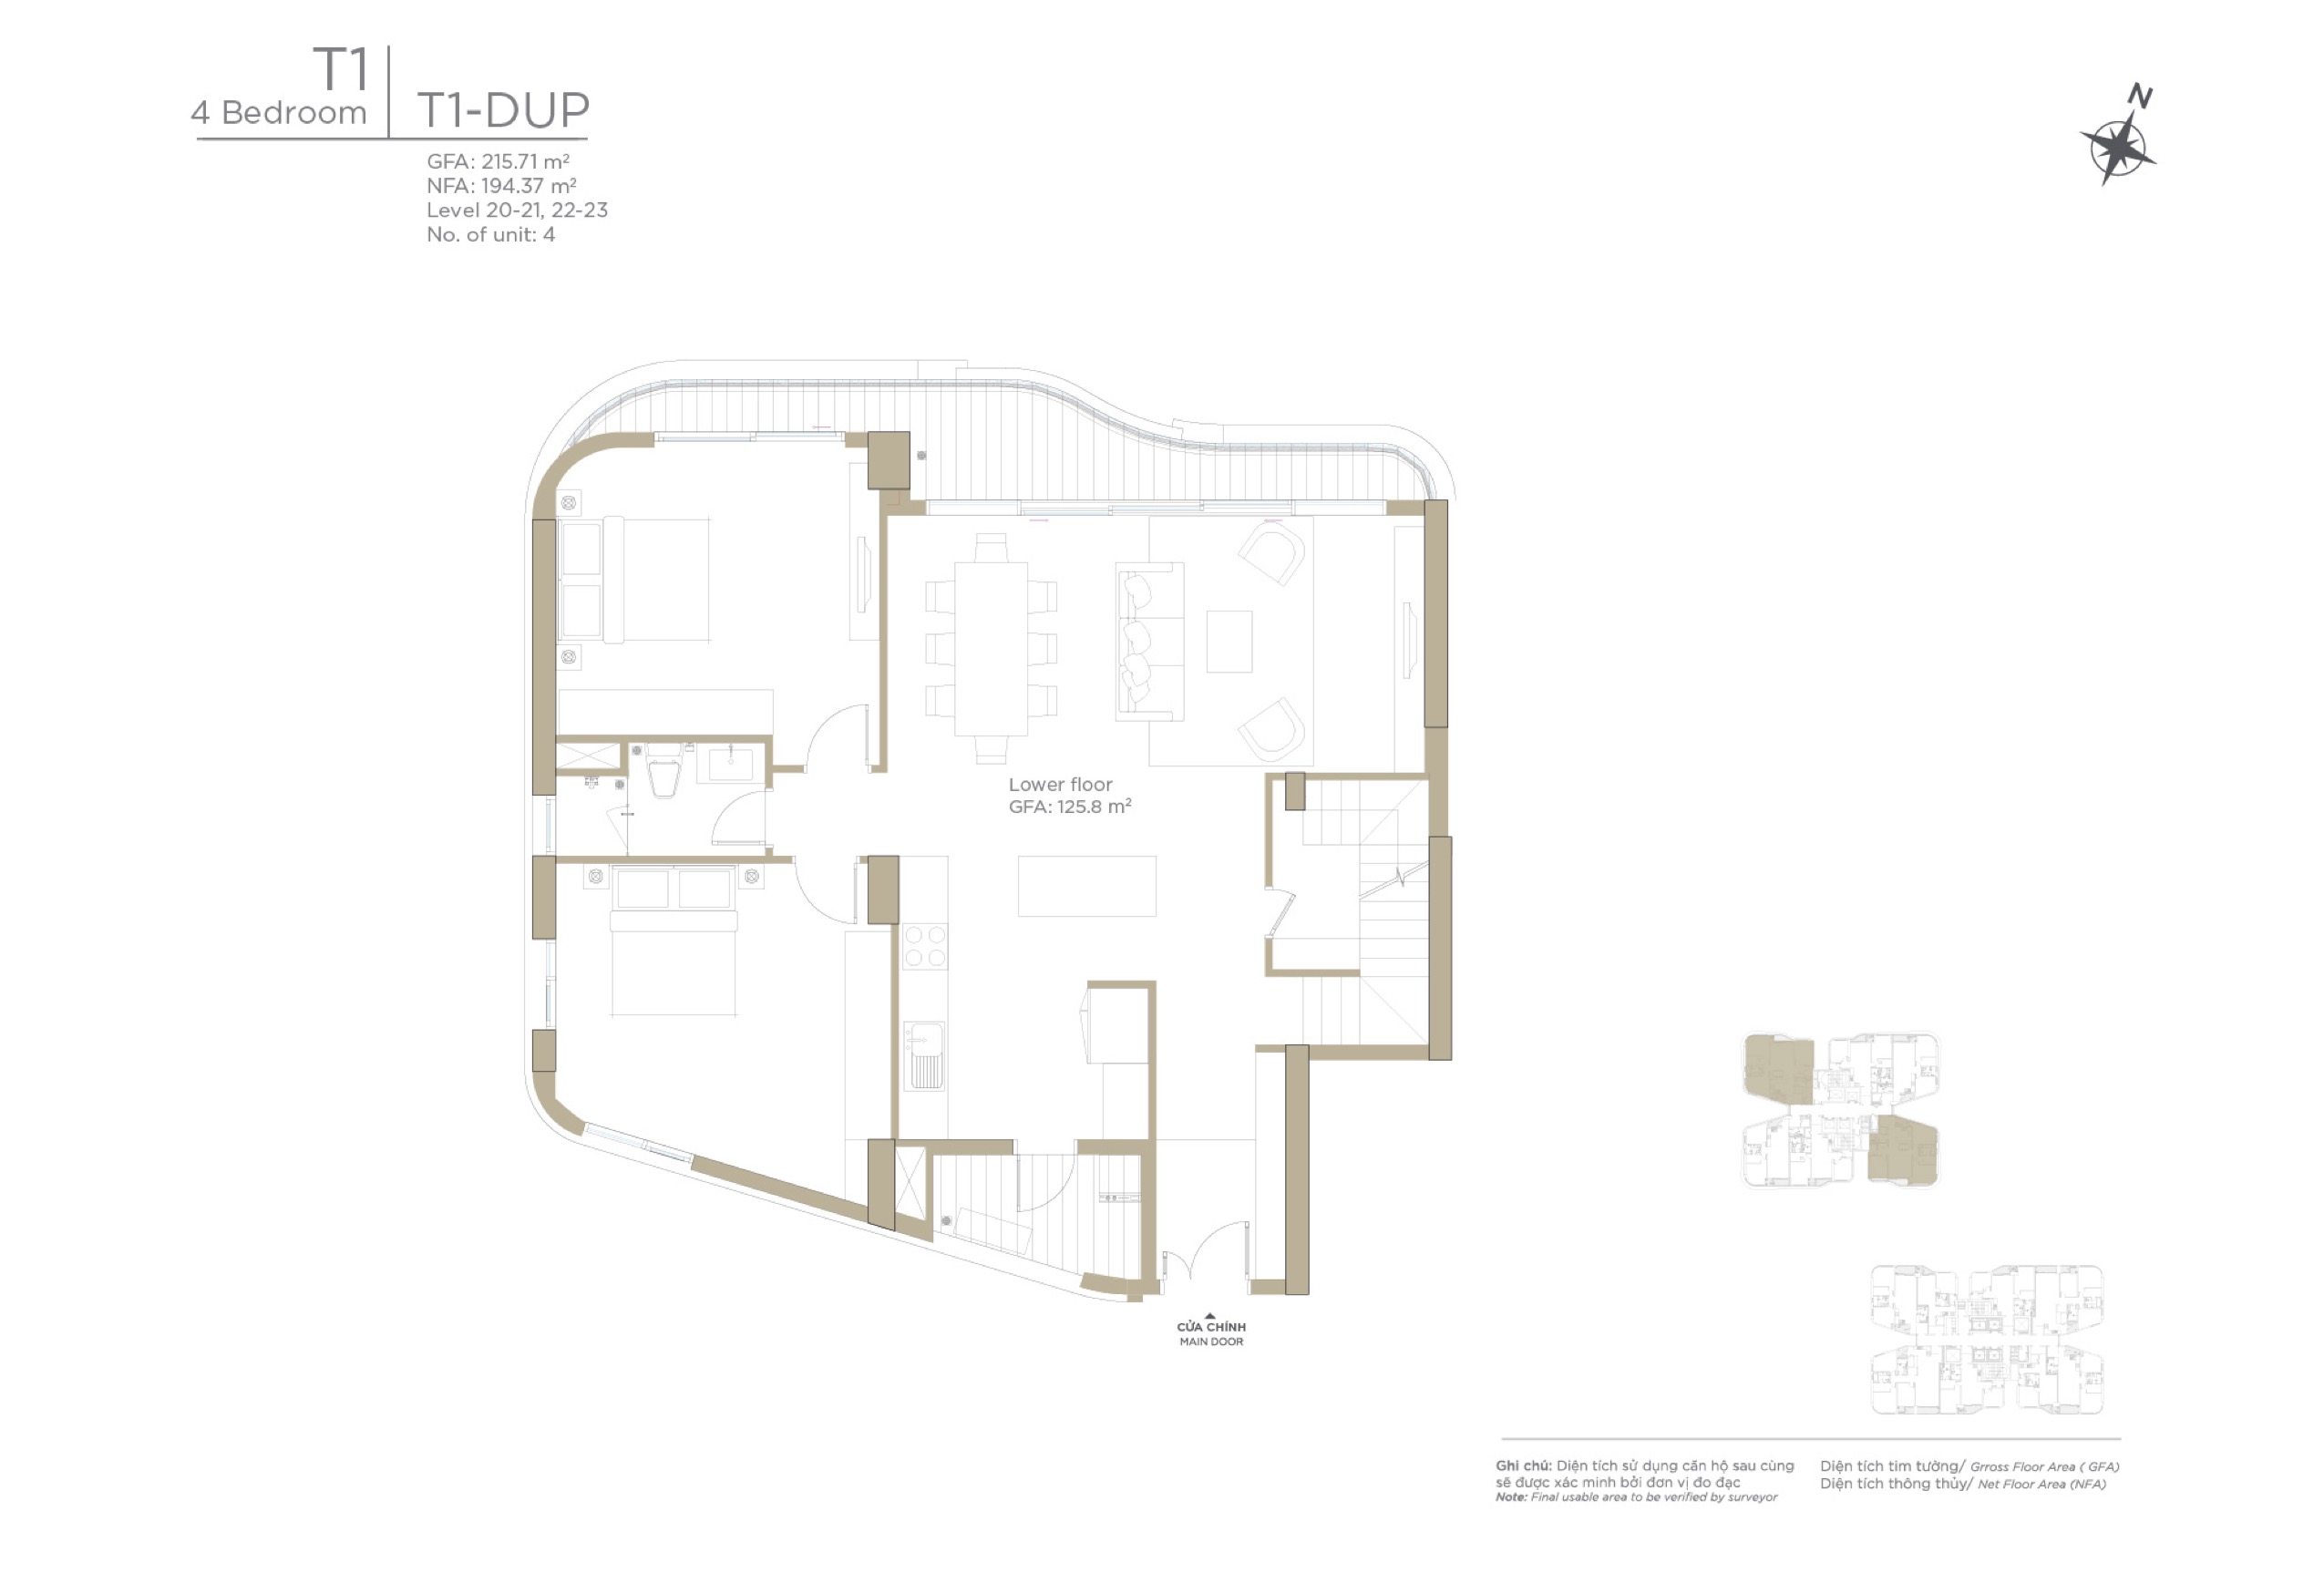 Mặt bằng layout căn hộ Duplex 4 phòng ngủ Zeit River Thủ Thiêm Tháp T1 - bán chuyển nhượng căn hộ duplex 4 phòng ngủ Zeit River Thủ Thiêm